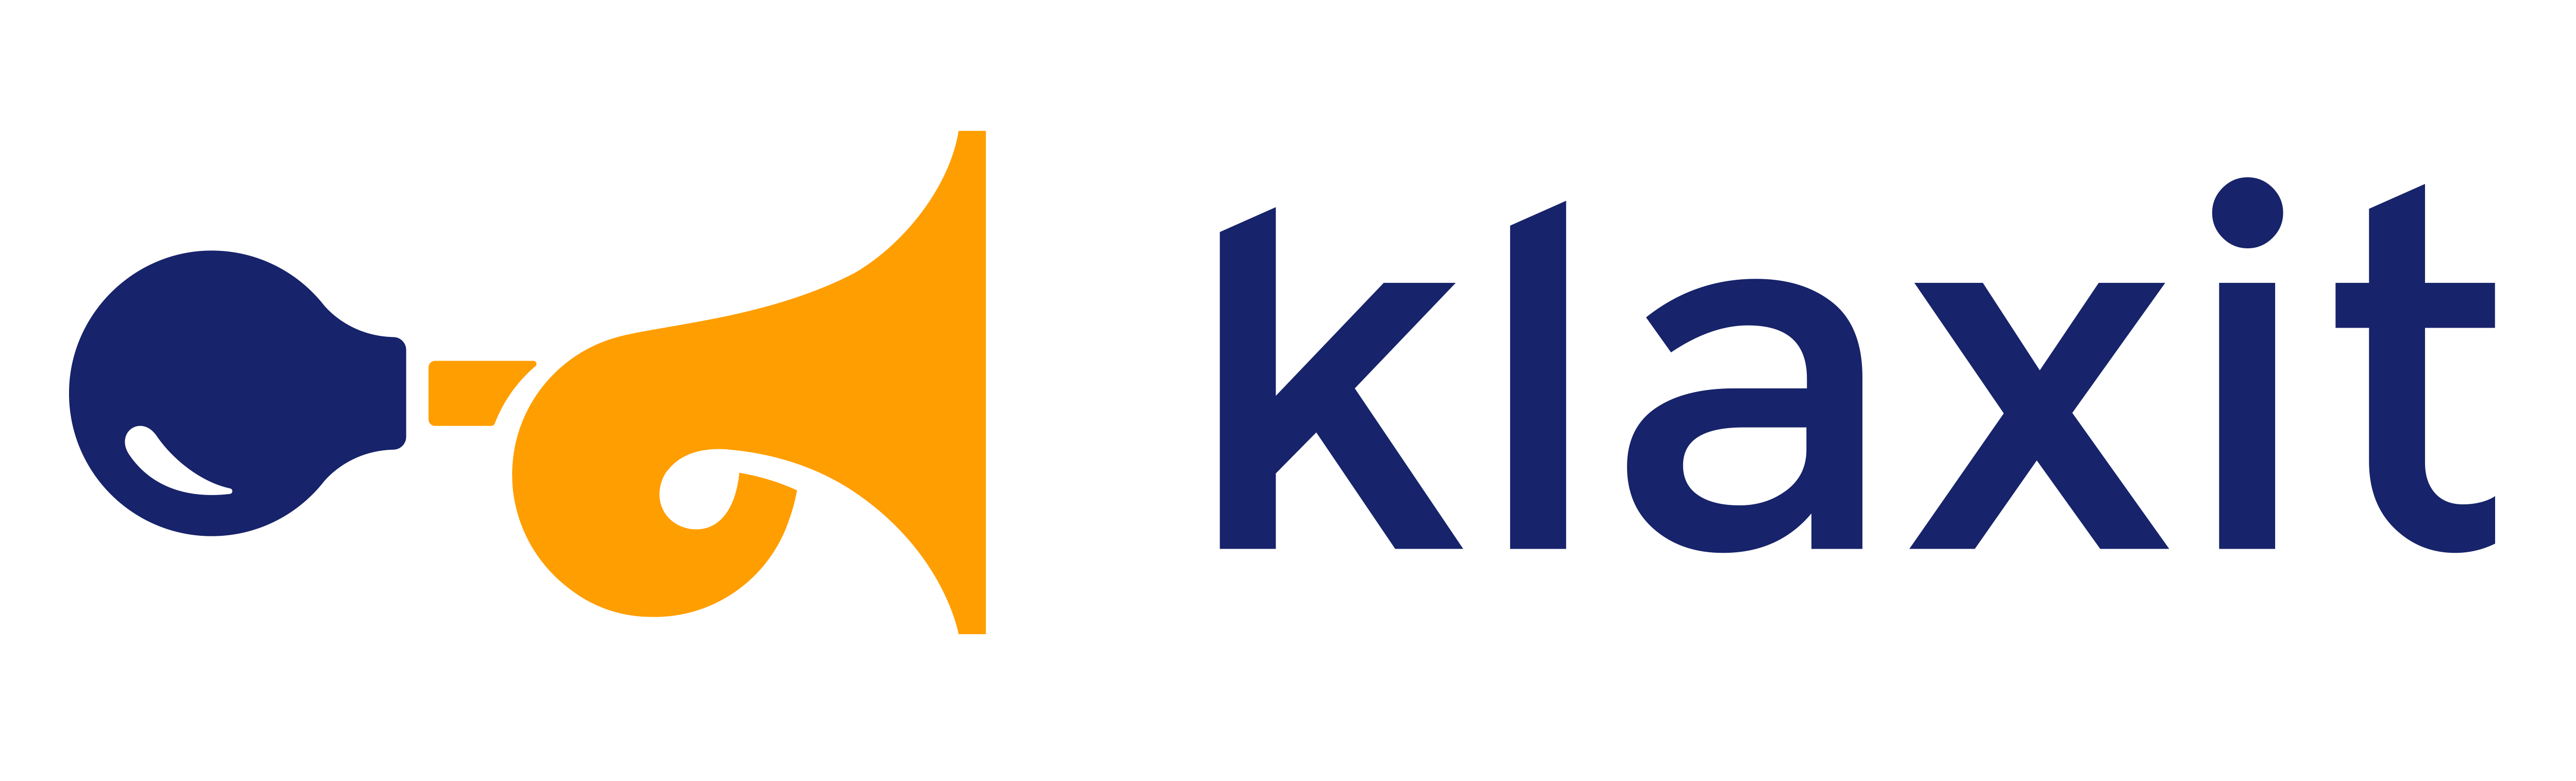 logo-klaxit-large-2062c9f2c66d2ac453e6